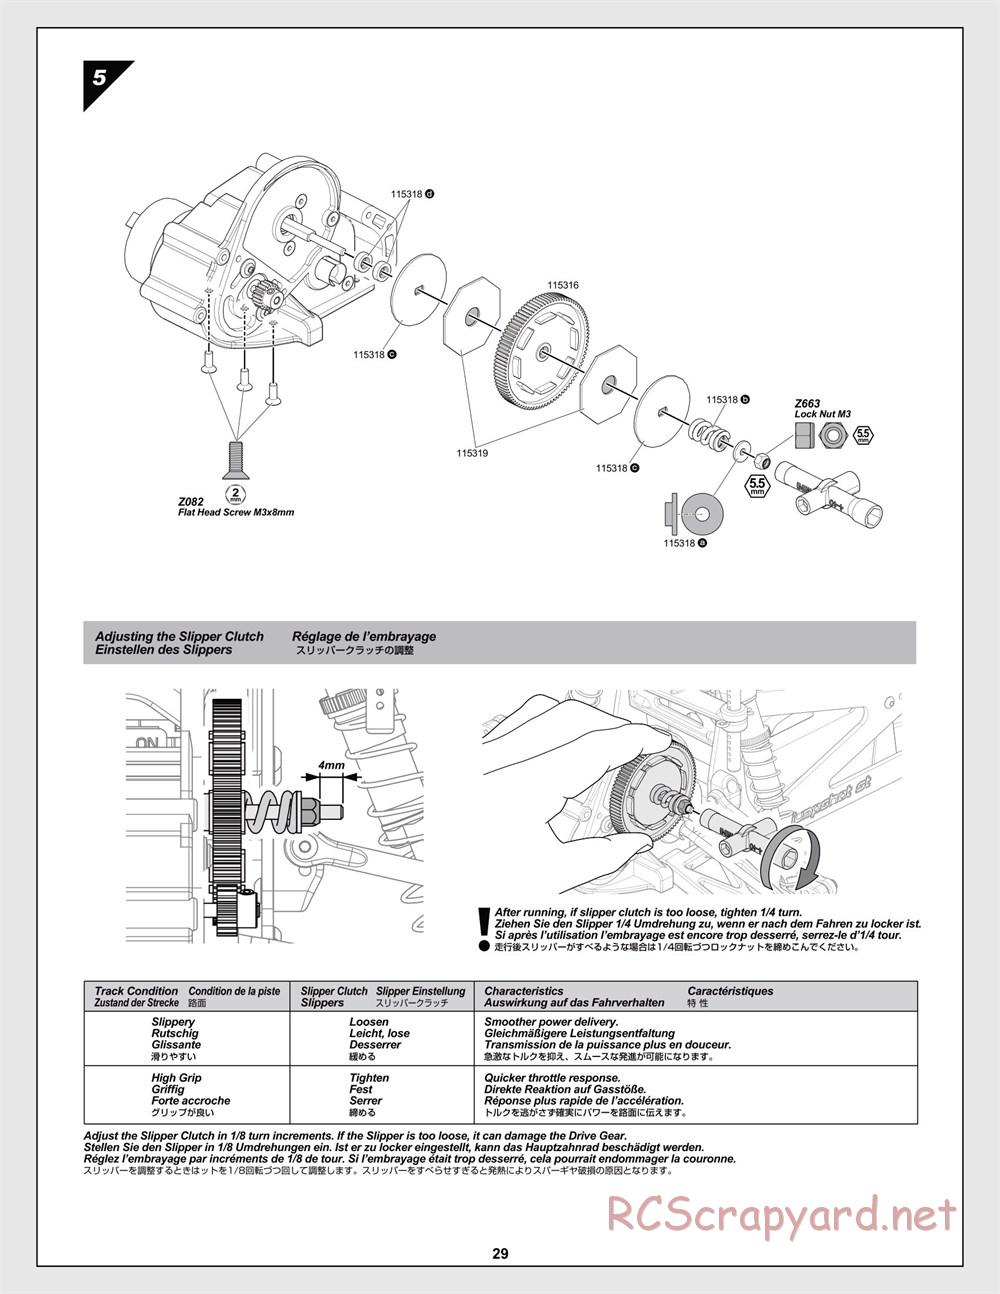 HPI - Jumpshot MT V2 - Manual - Page 29